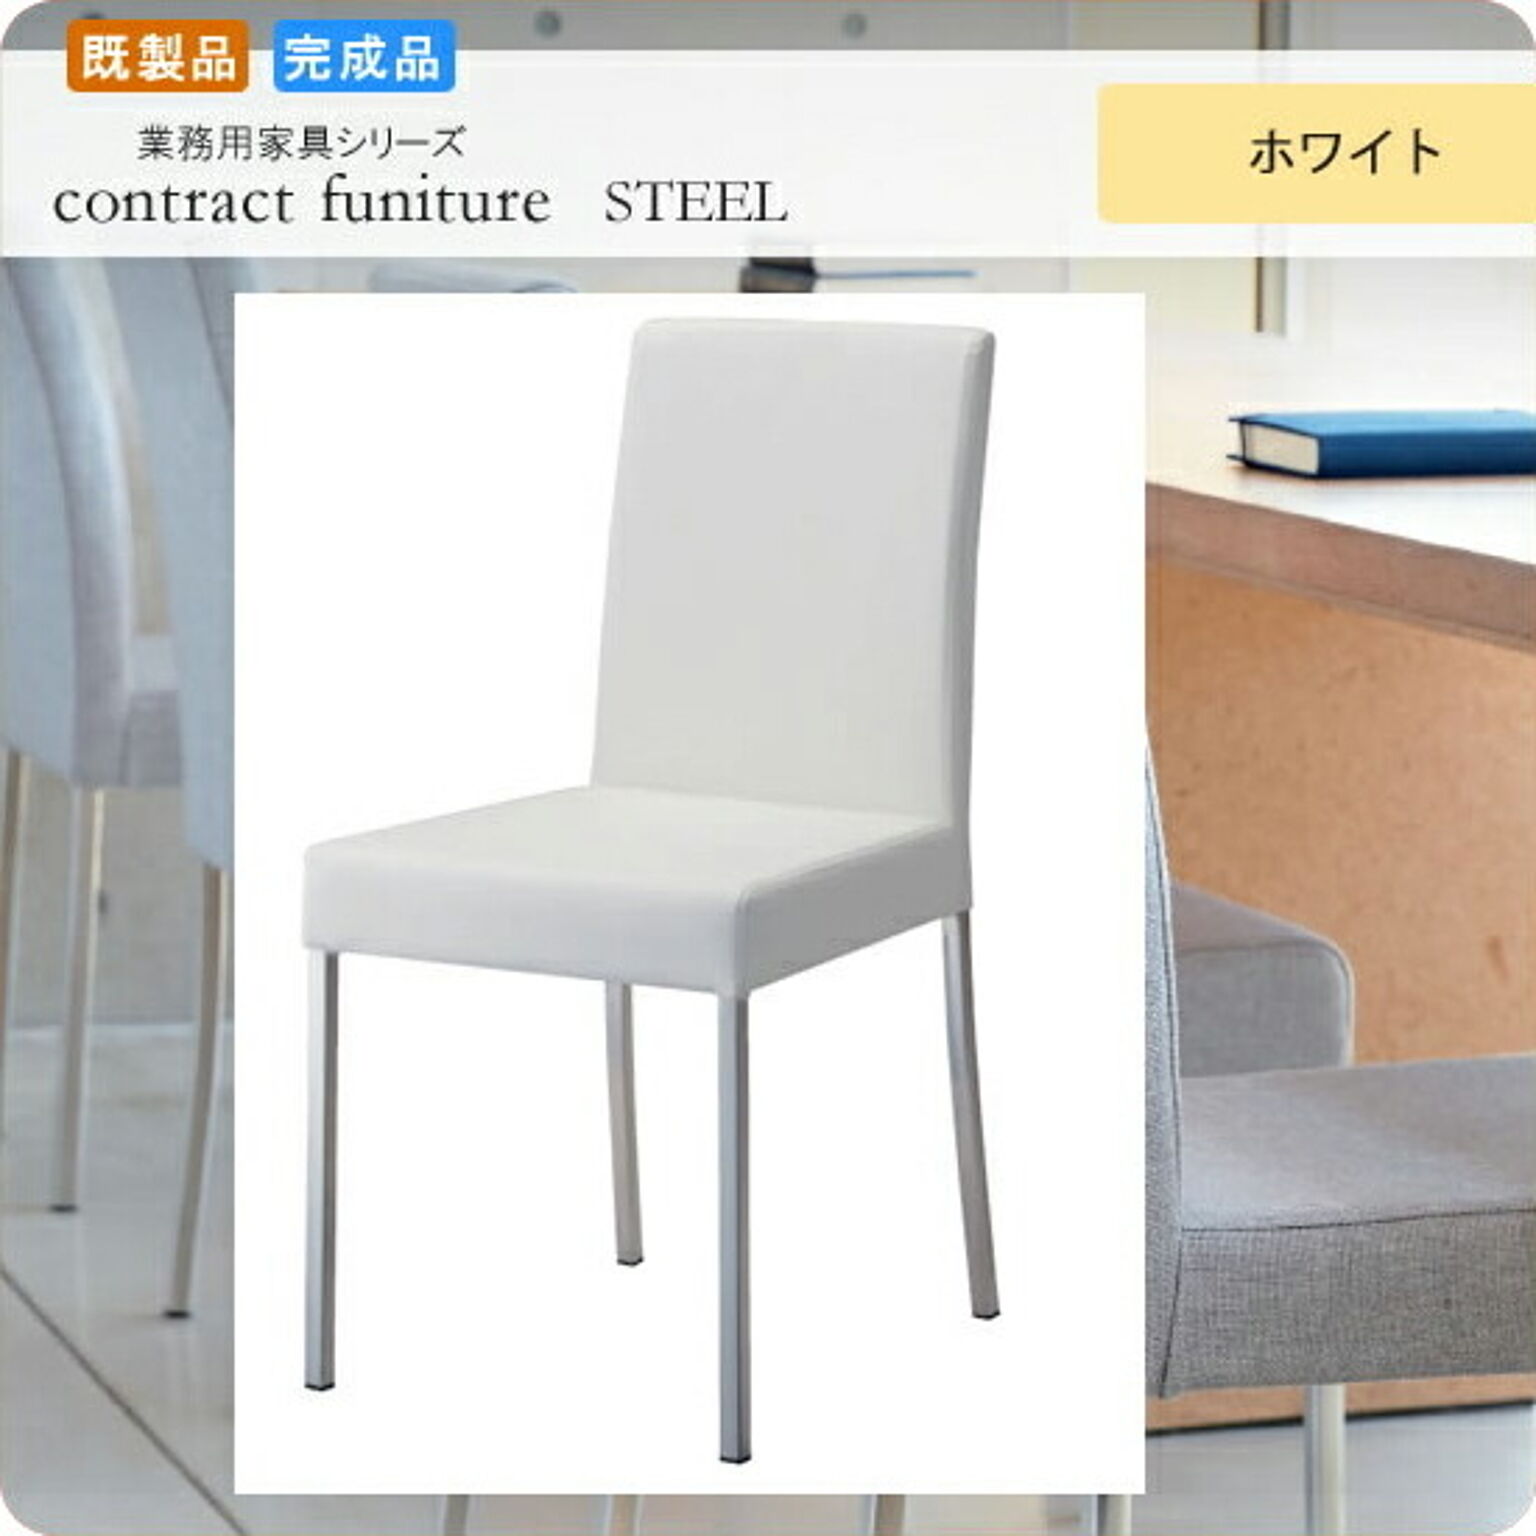 ダイニングチェアー いす イス 椅子  リレーメル ホワイト 既製品 業務用家具シリーズ STEEL（スチール）  店舗 施設 コントラクト